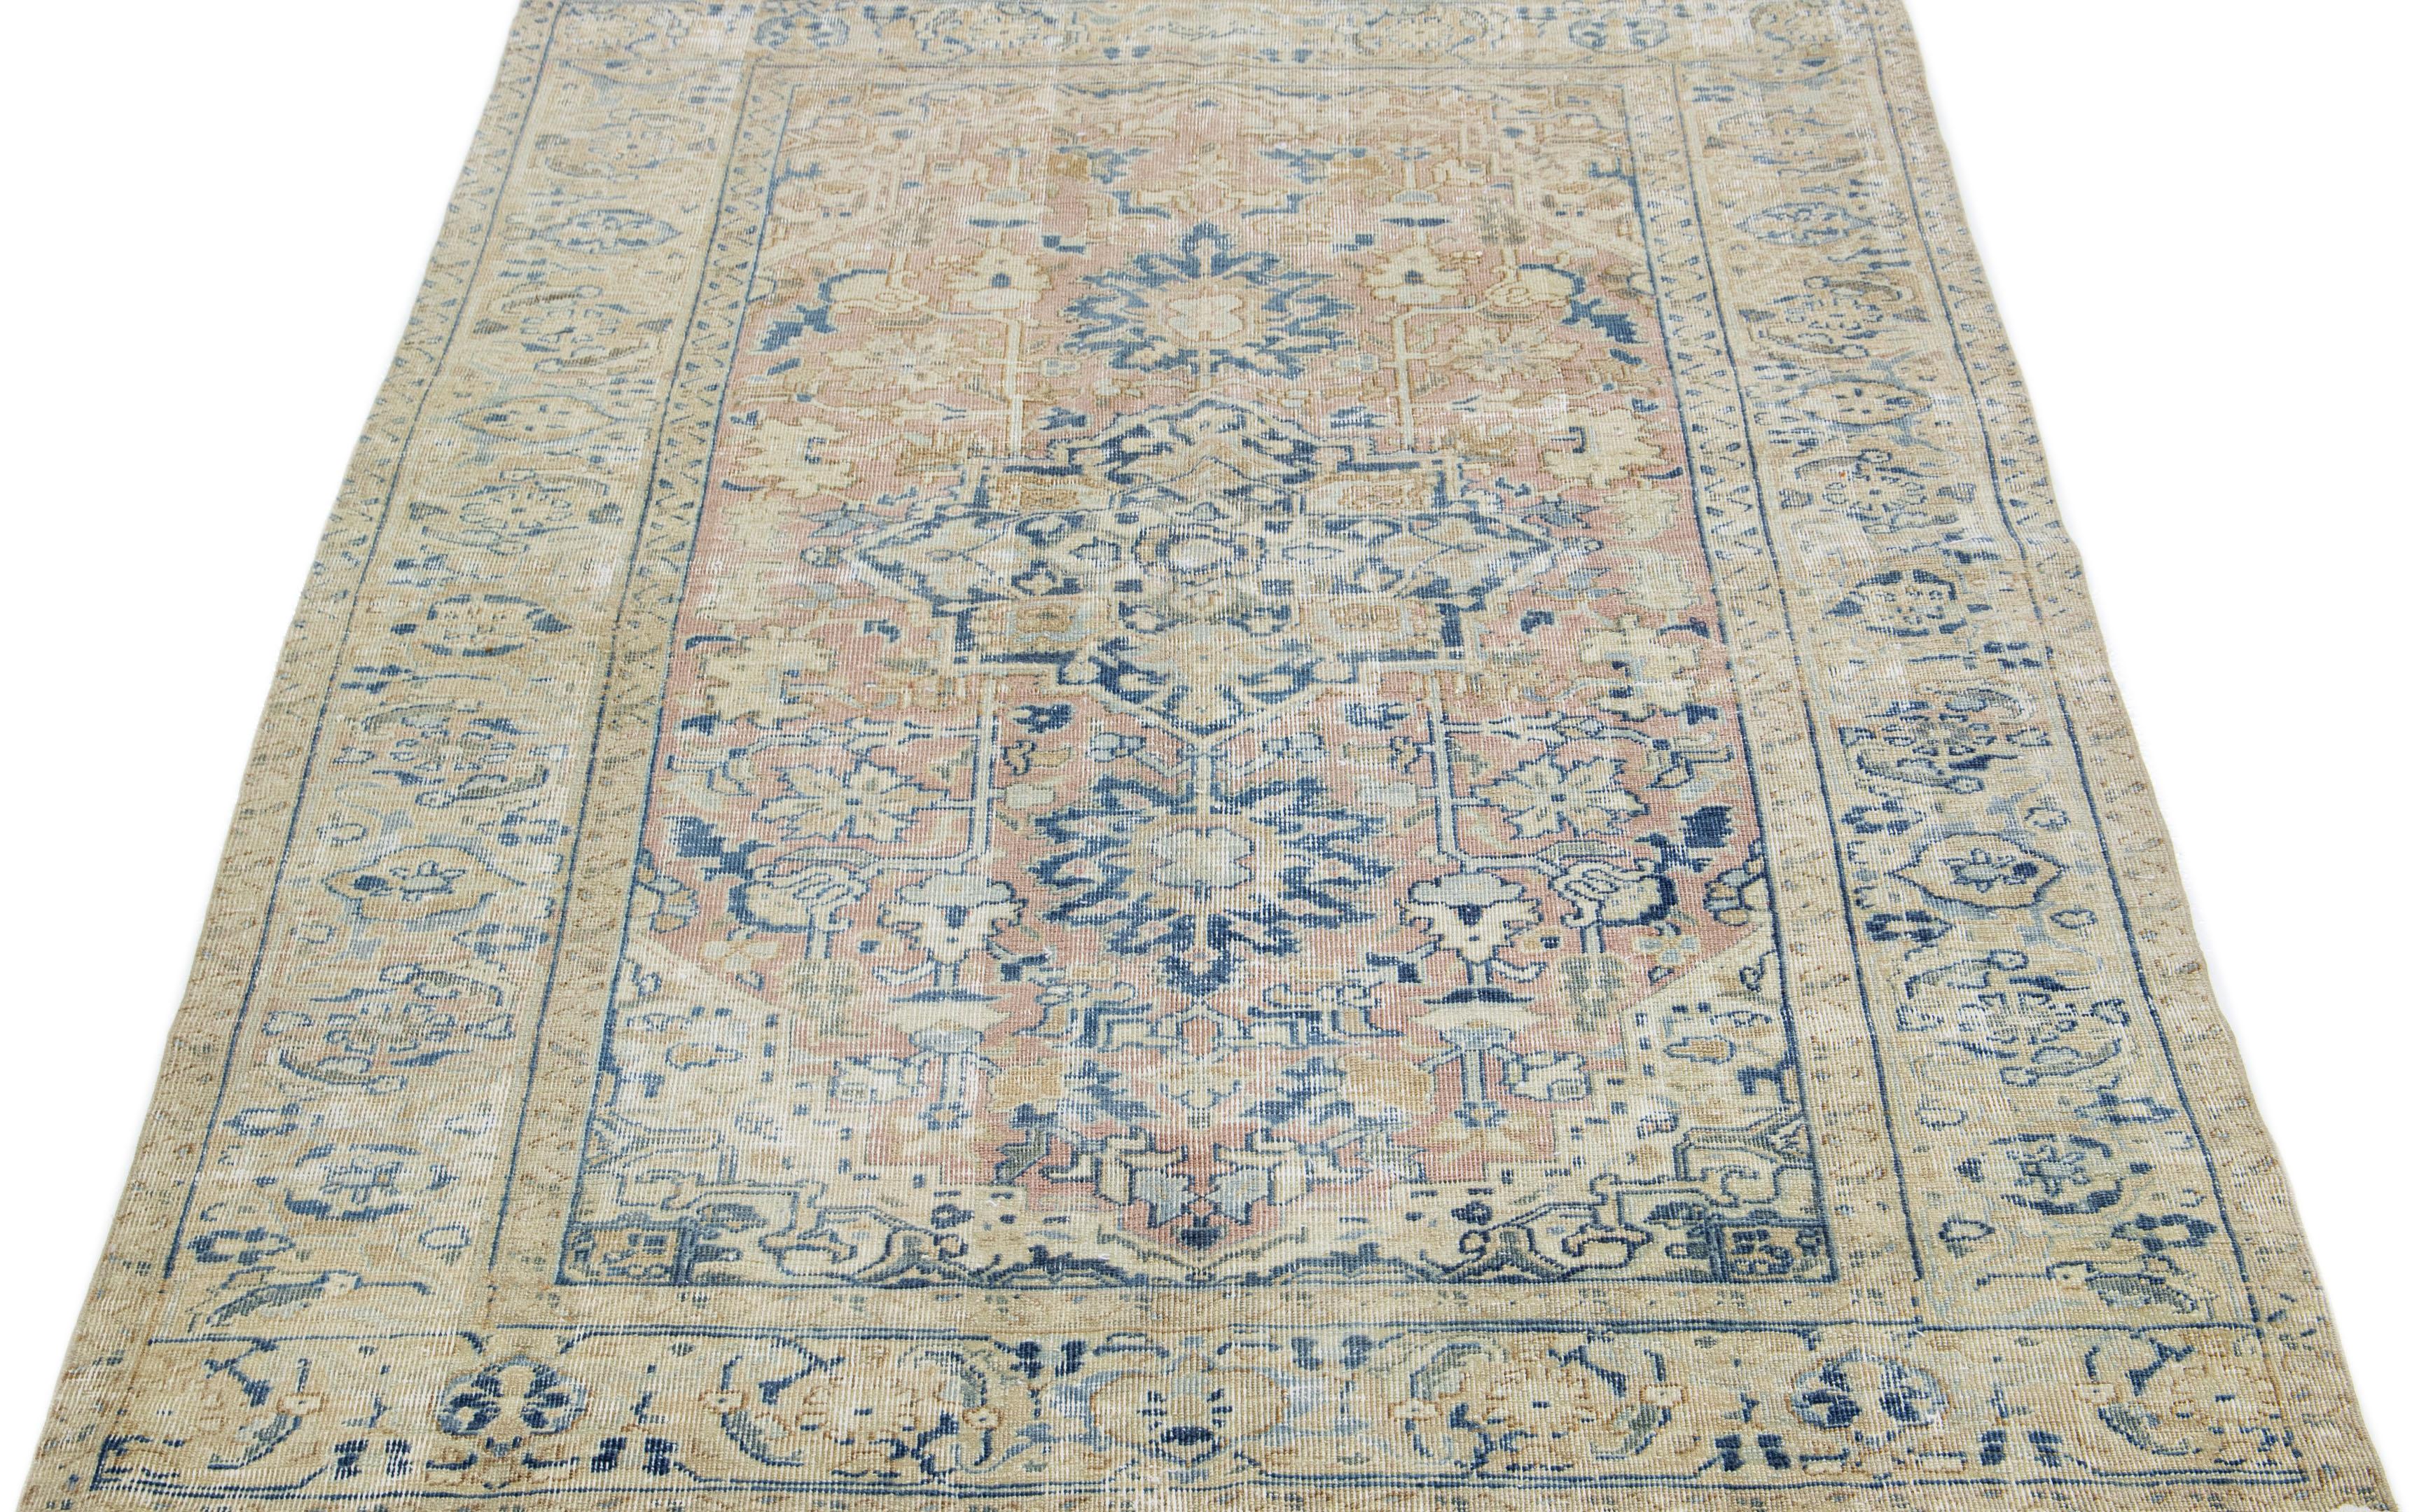 Der Perserteppich zeigt ein exquisites, allumfassendes Design mit einem floralen Medaillon und einem geometrischen Motiv in Blau- und Beigetönen auf einem pfirsichfarbenen Feld.

Dieser Teppich misst 5'9